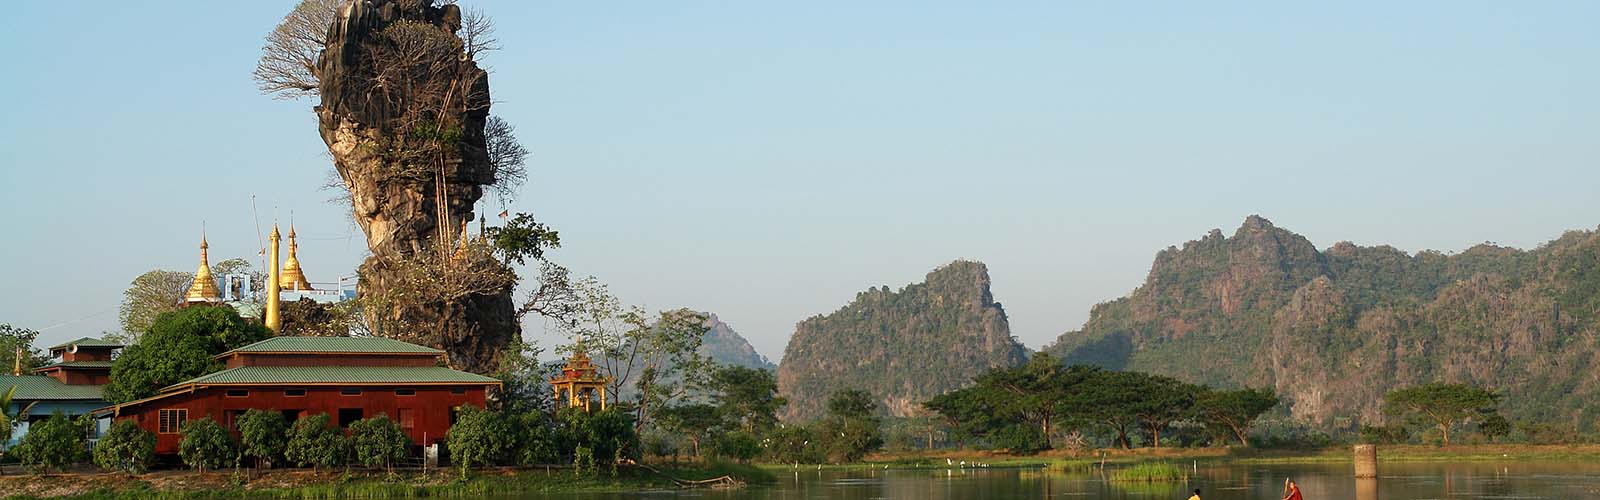 Viaggio Birmania | Viaggio personalizzato in Birmania | ilotustours.com